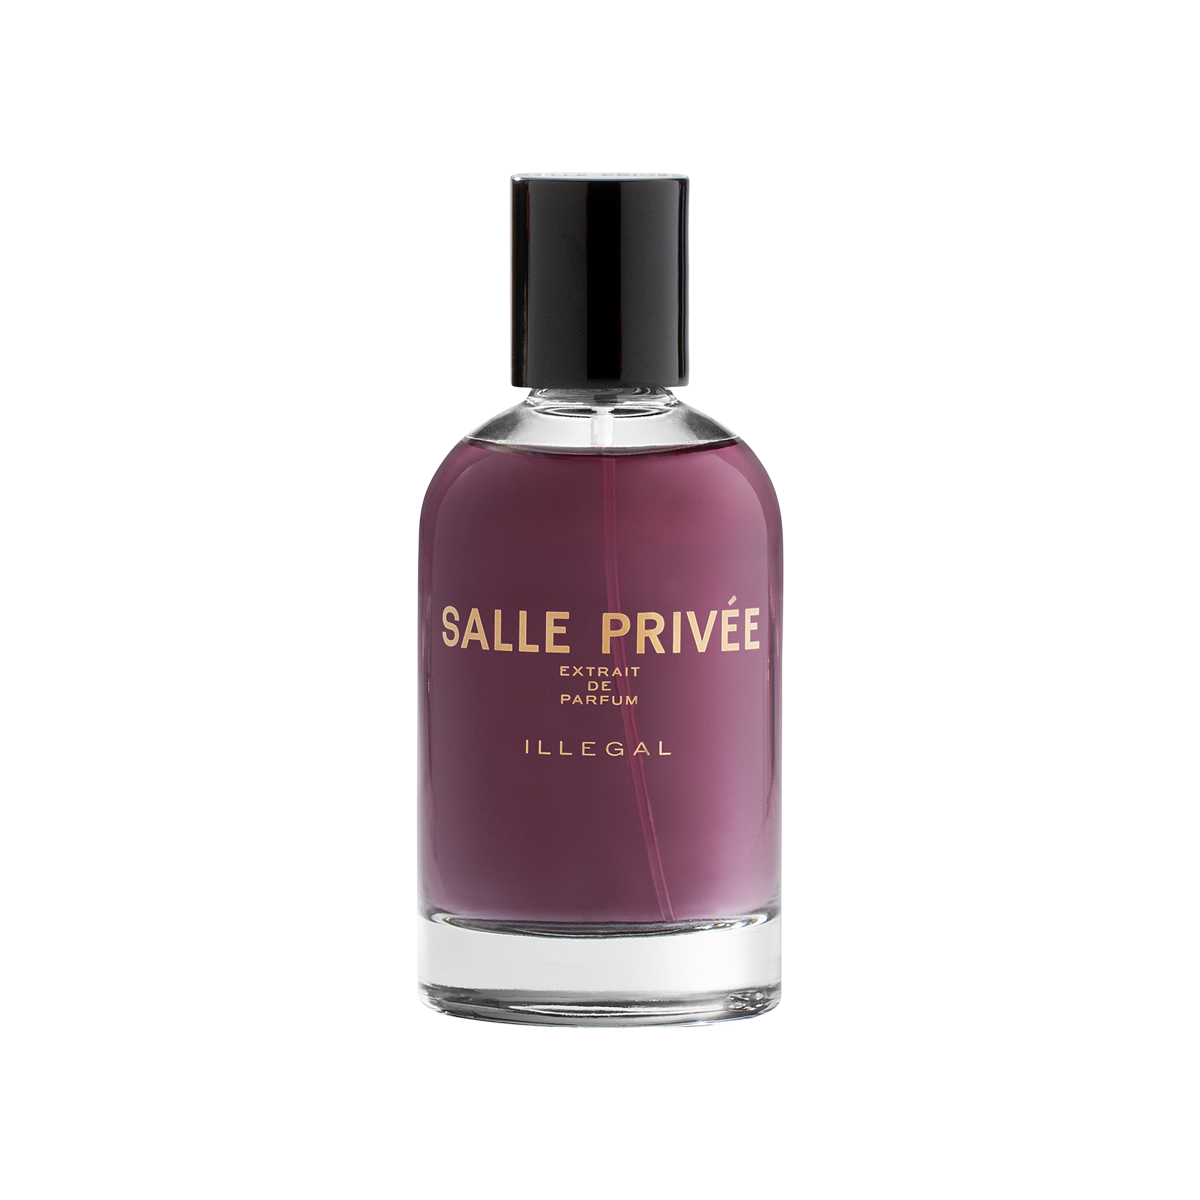 SALLE PRIVEE - Illegal Extrait de Parfum